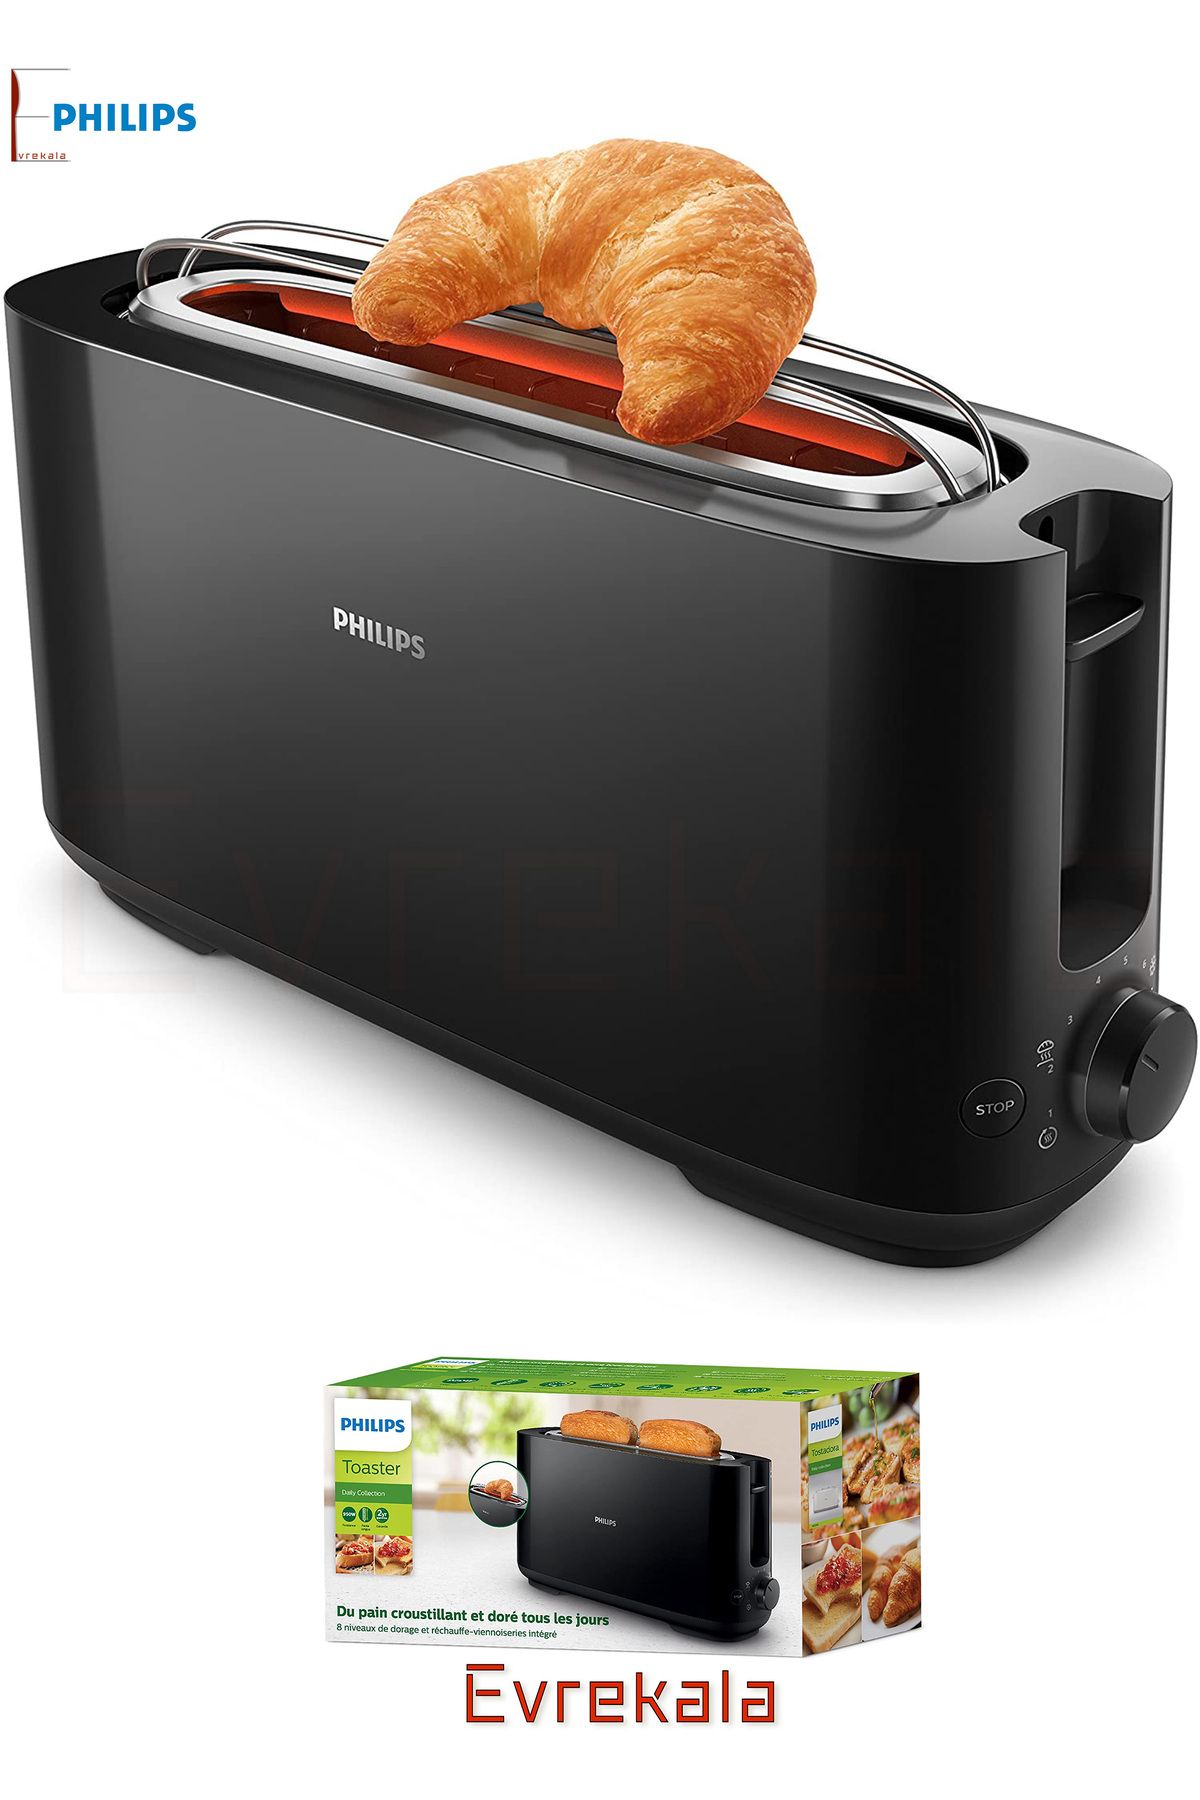 Philips Evrekala Shop Ekmek Kızartma Makinesi Philips Yeni Seri Çok Ayarlı Büyük-Yetkili Satıcı Evrekala-